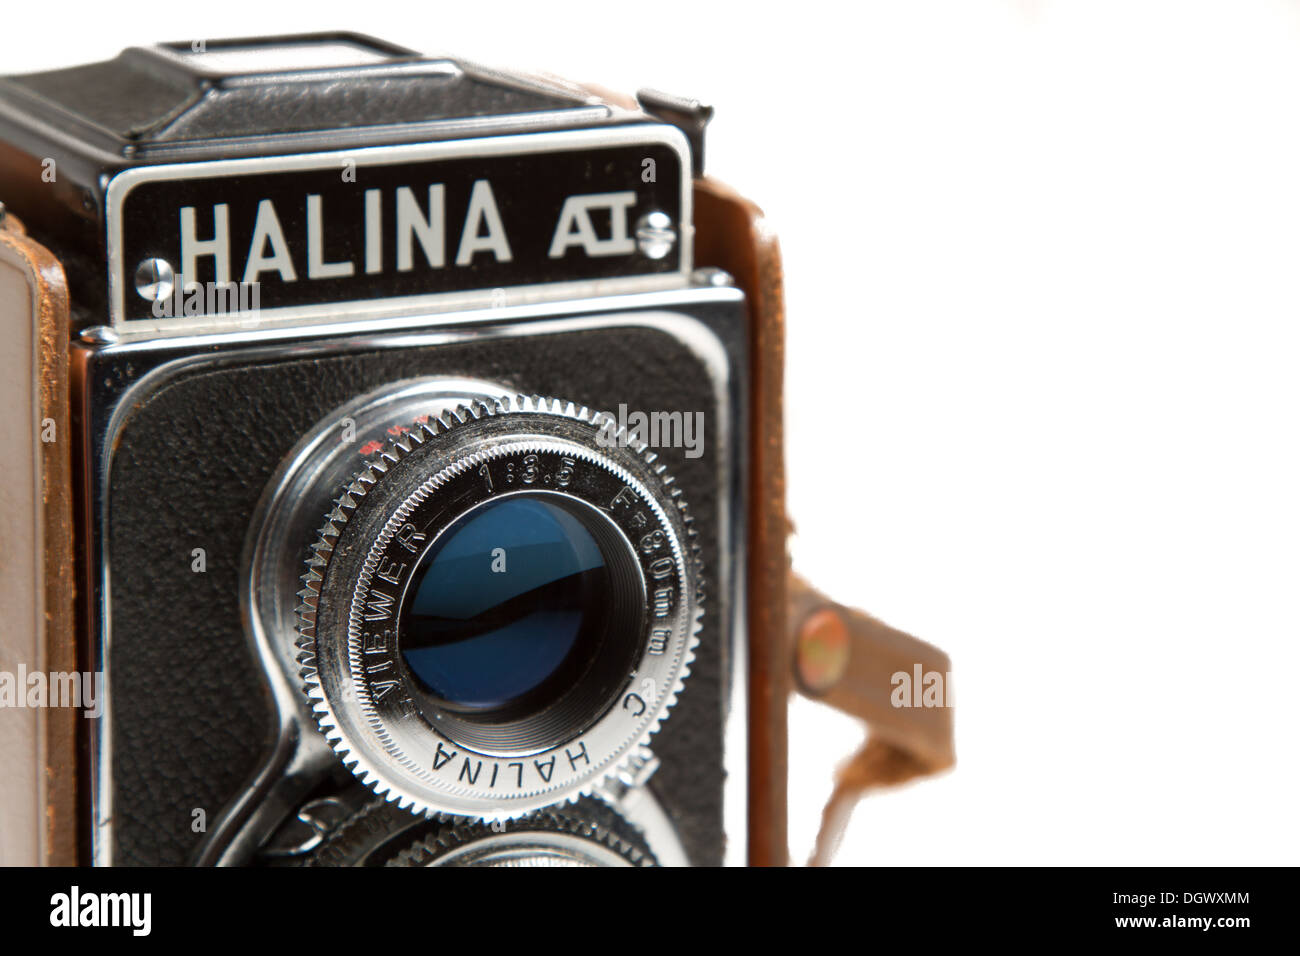 Halina AI Lente doppia fotocamera reflex Foto Stock